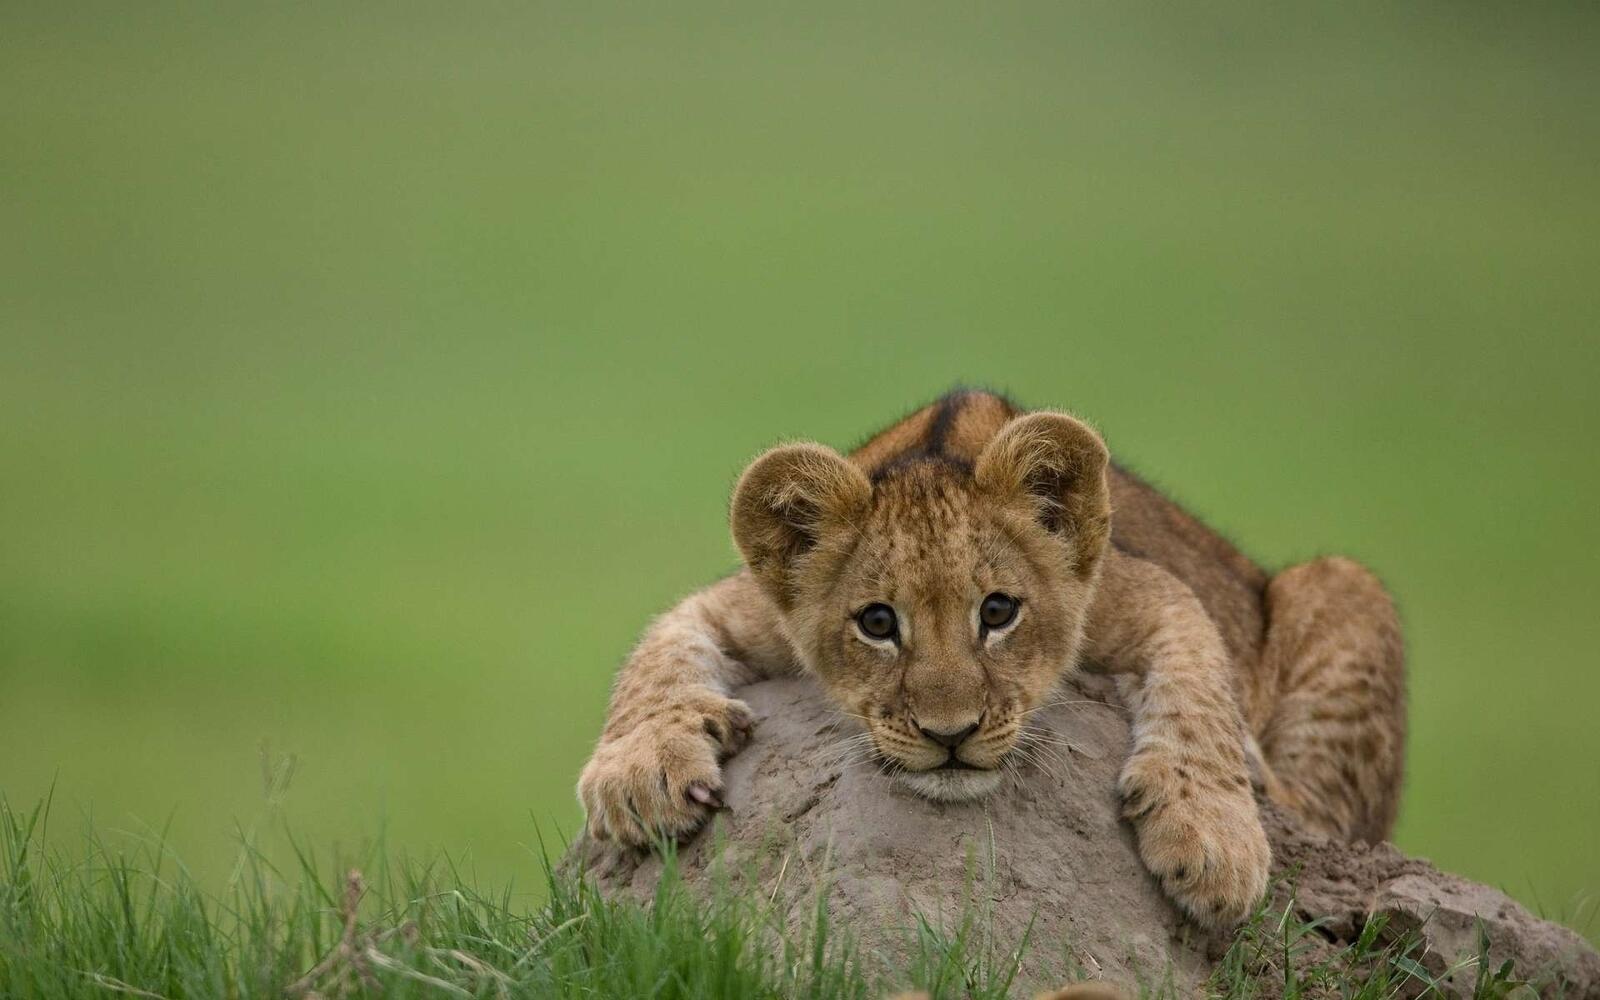 Wallpapers cats lion lion cub on the desktop